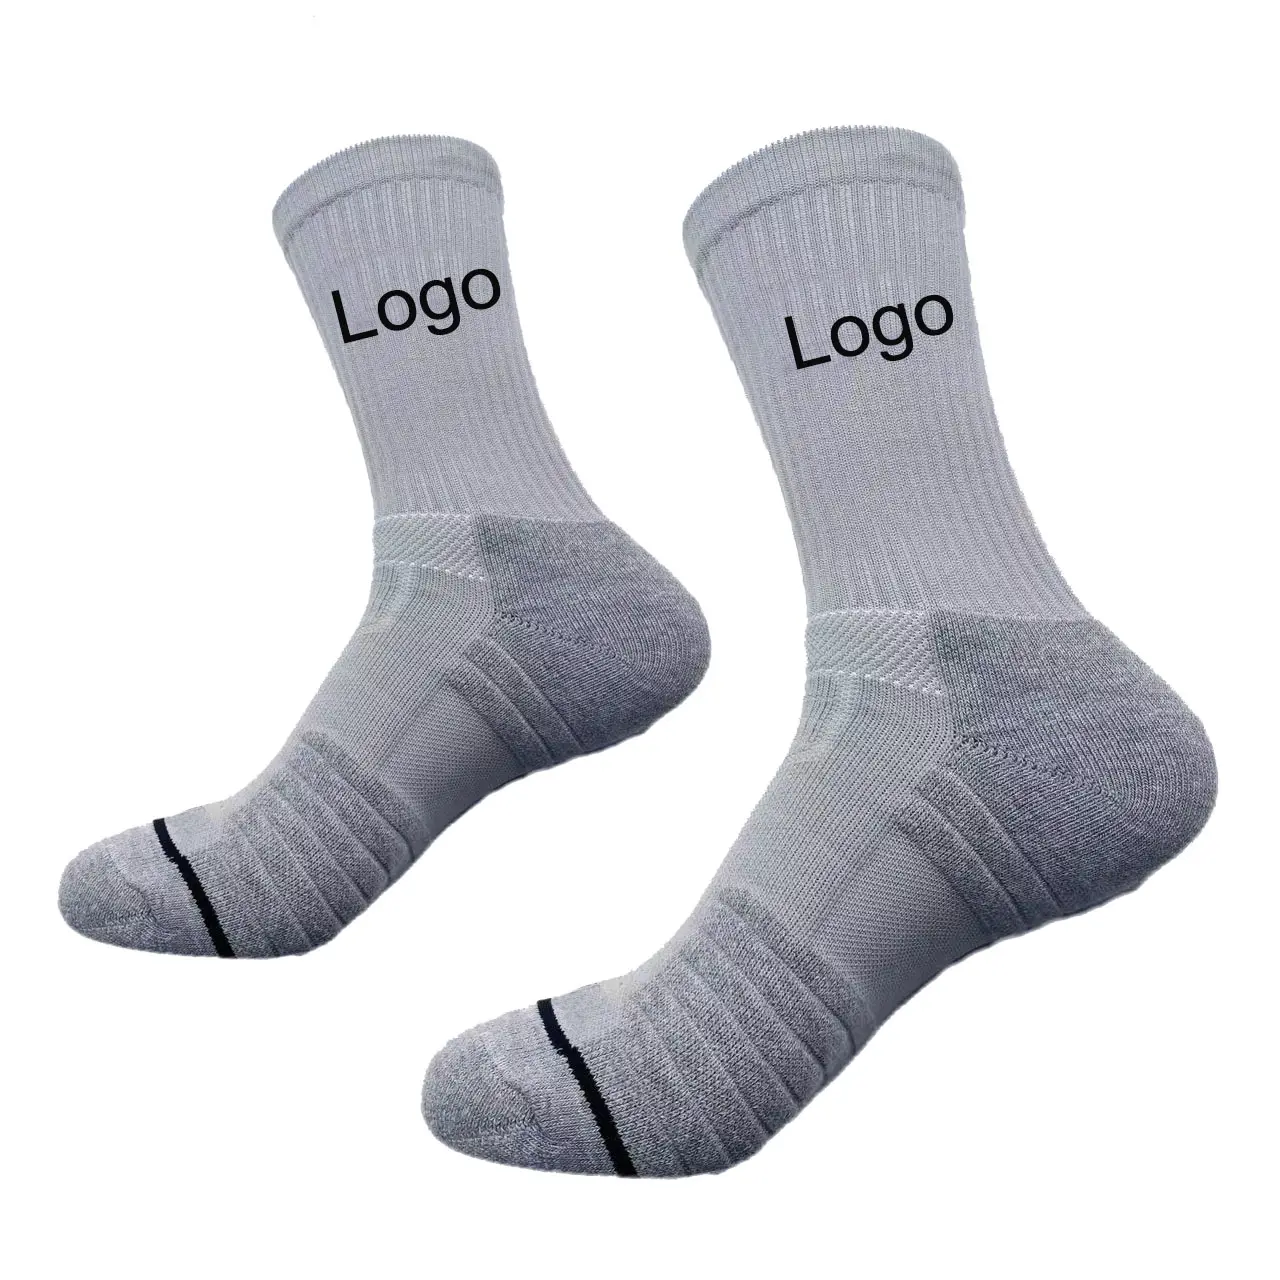 Calcetines deportivos de compresión de alta calidad con diseño personalizado, calcetines deportivos coloridos deportivos atléticos Unisex